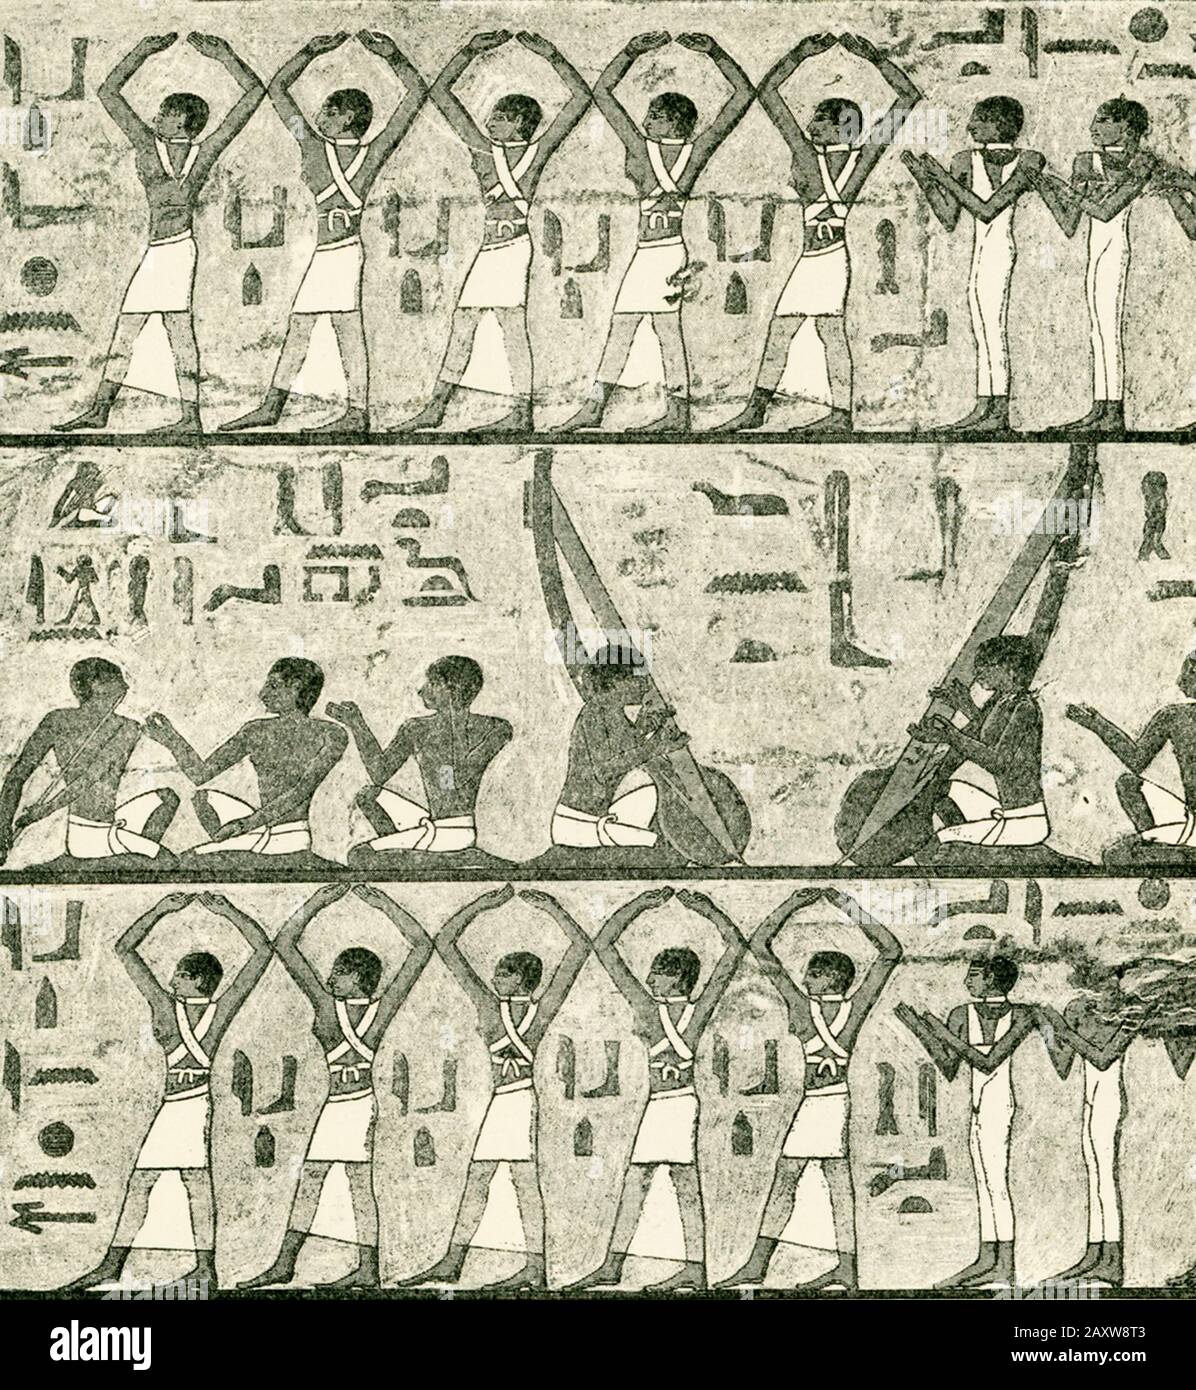 Cantanti, suonatori di flauto, arpisti e ballerini dalla tomba di ti (anche TY). La Mastaba di ti fu scoperta da Auguste Mariette nel 1865. Questa grande e dettagliata tomba privata non è solo l'arte del Vecchio Regno al suo meglio, ma anche una delle principali fonti di conoscenza della vita nel Vecchio Regno Egitto. Il suo proprietario, ti, era più grande delle piramidi e dei templi del sole di Abu Sir (tra le altre cose) durante la dinastia 5th (c 2465-2323 a.C.). Ti era un parrucchiere per i reali durante la Dinastia V, così come il controllore delle aziende agricole e delle scorte che apparteneva al Foto Stock